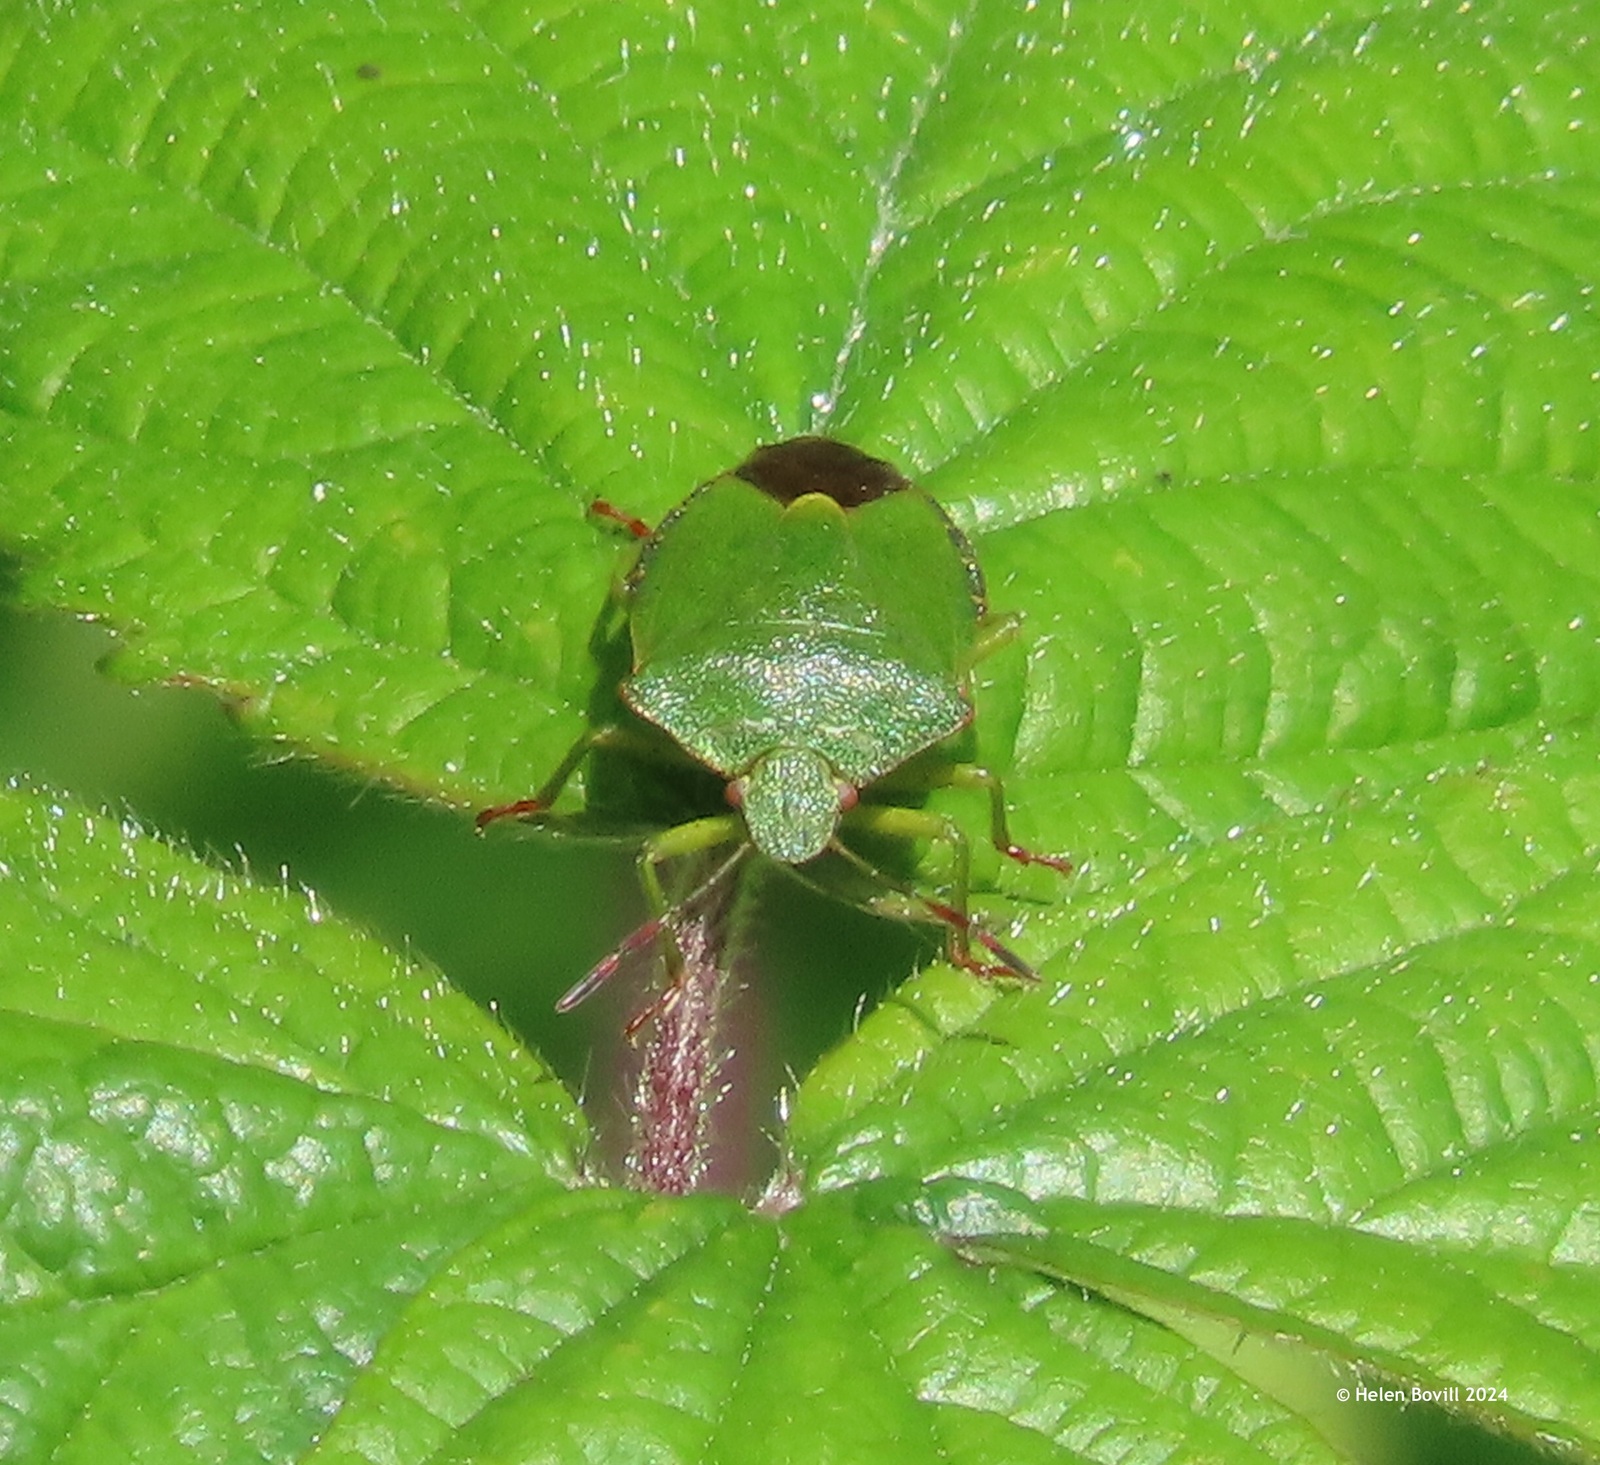 A Green Shield bug on a leaf